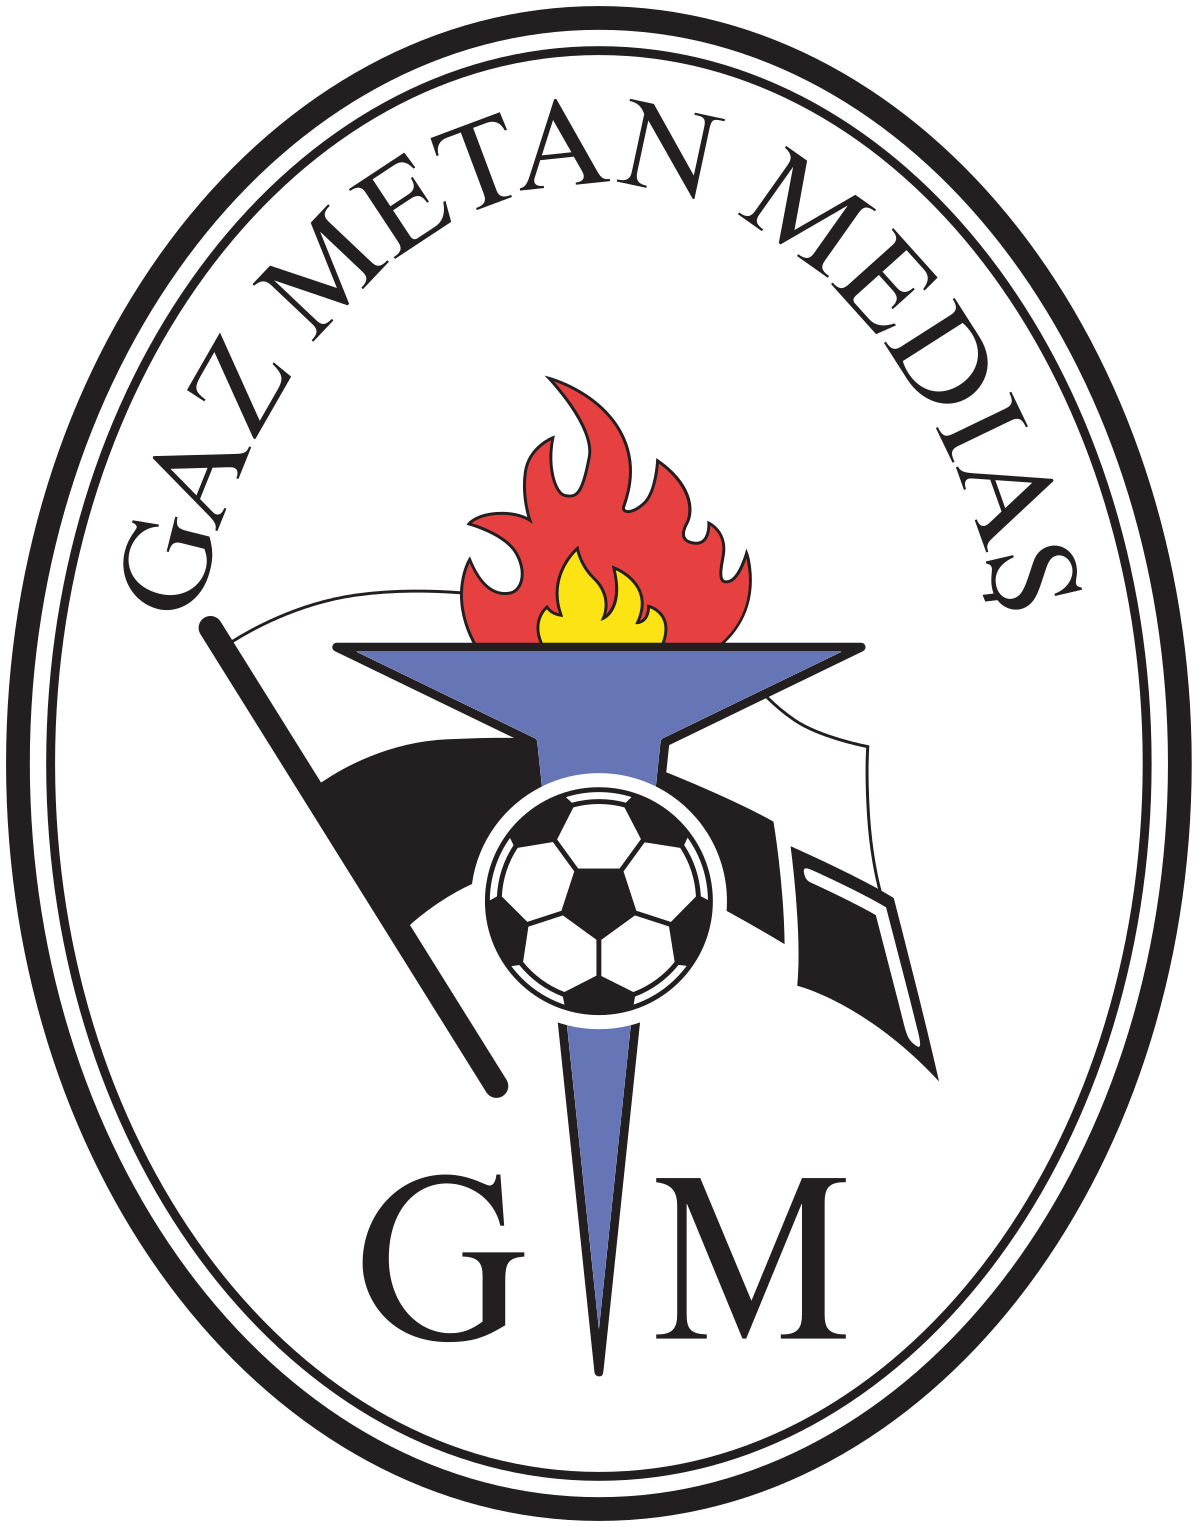 Gaz Metan Mediaș